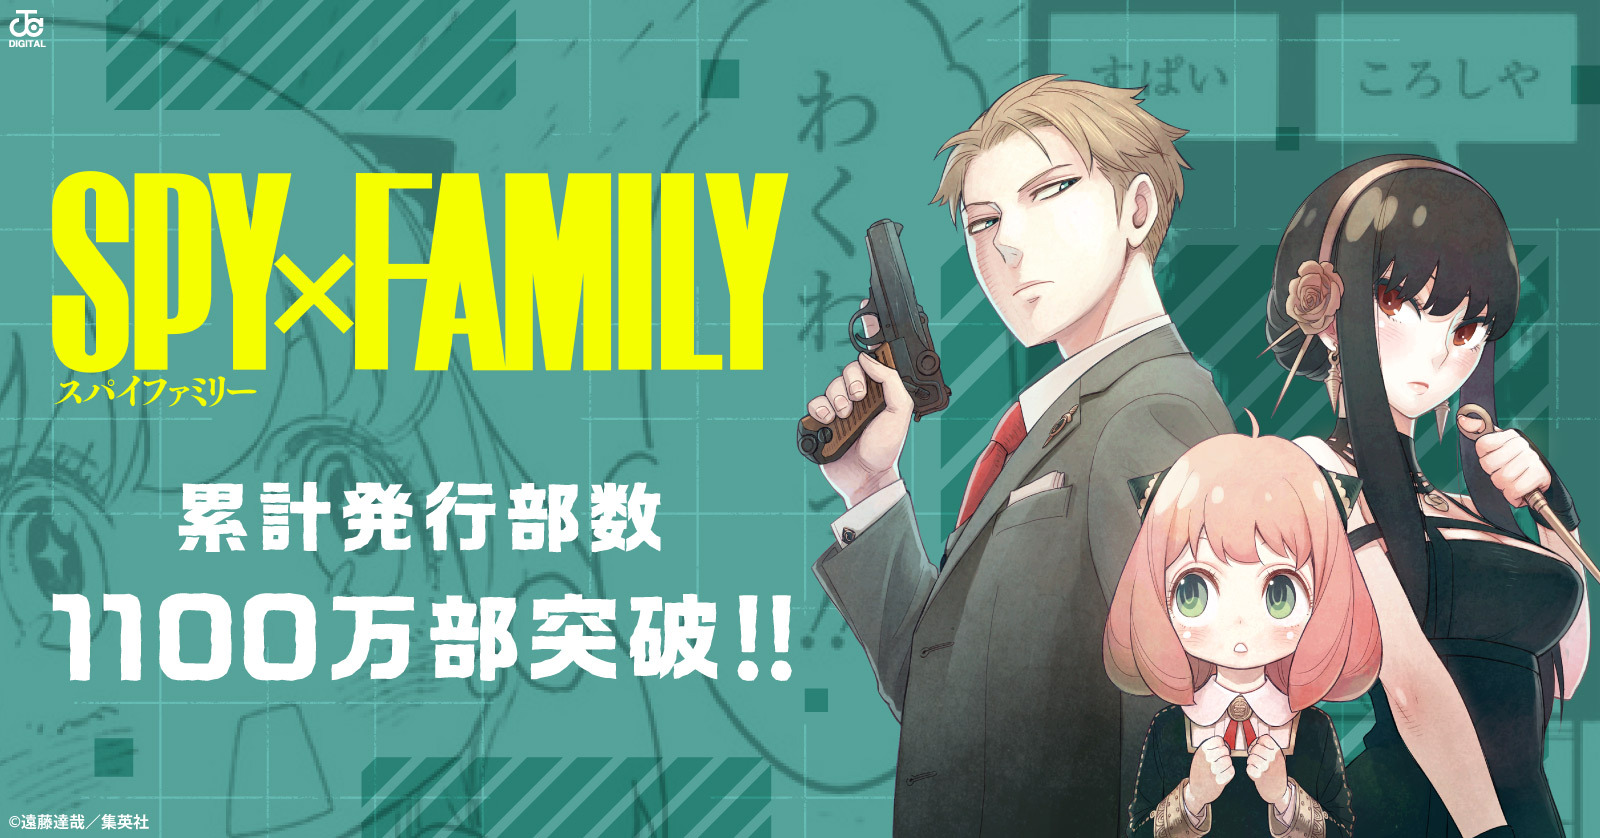 電子版 Spy Family 7 冊セット 最新刊まで 遠藤達哉 漫画全巻ドットコム